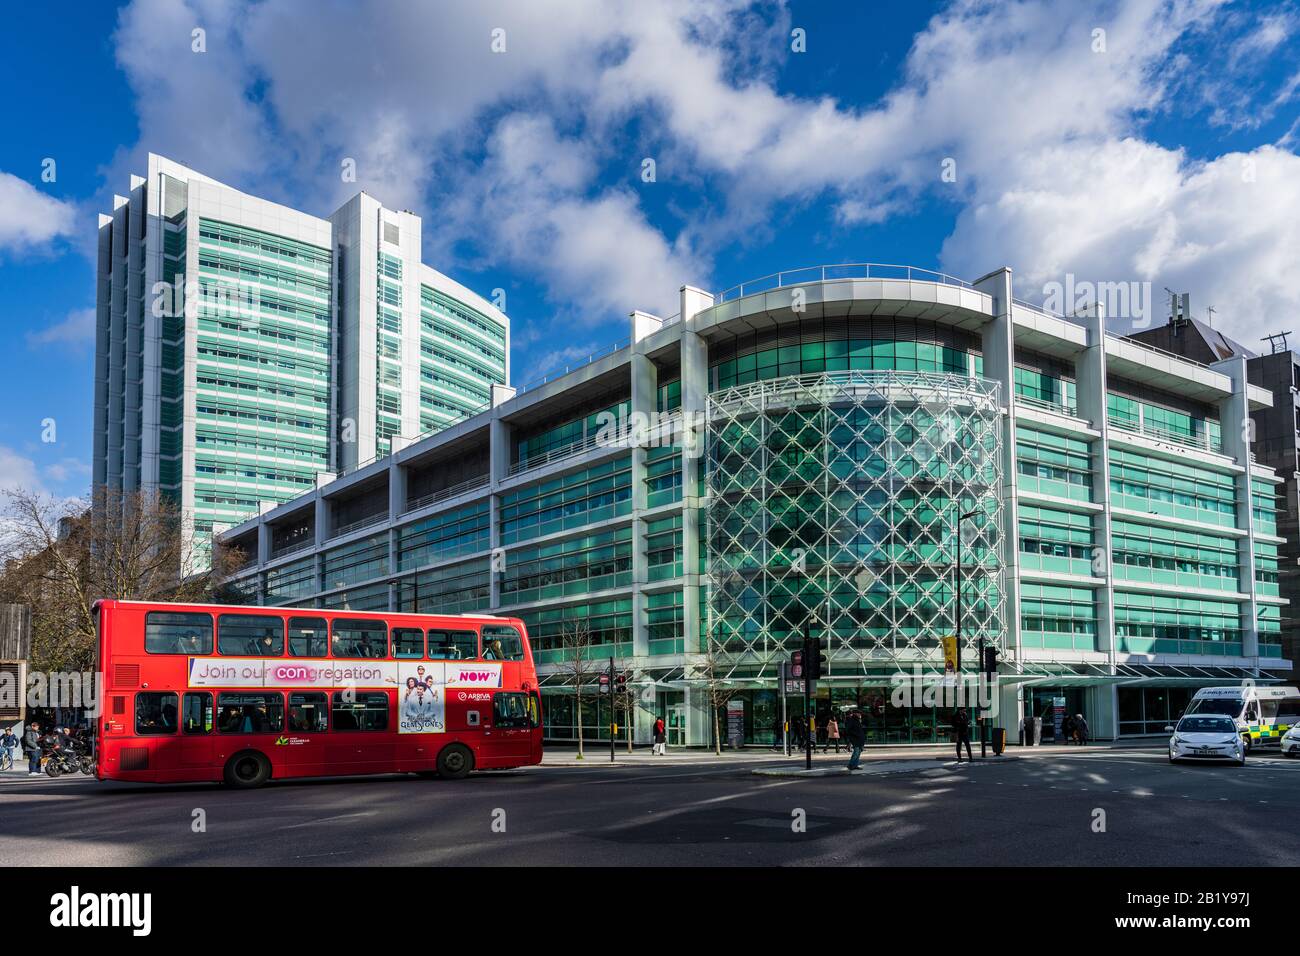 University College Hospital UCH Londres - un bus londonien passe par l'hôpital d'enseignement situé sur Euston Road dans le quartier de Bloomsbury, dans le centre de Londres Banque D'Images